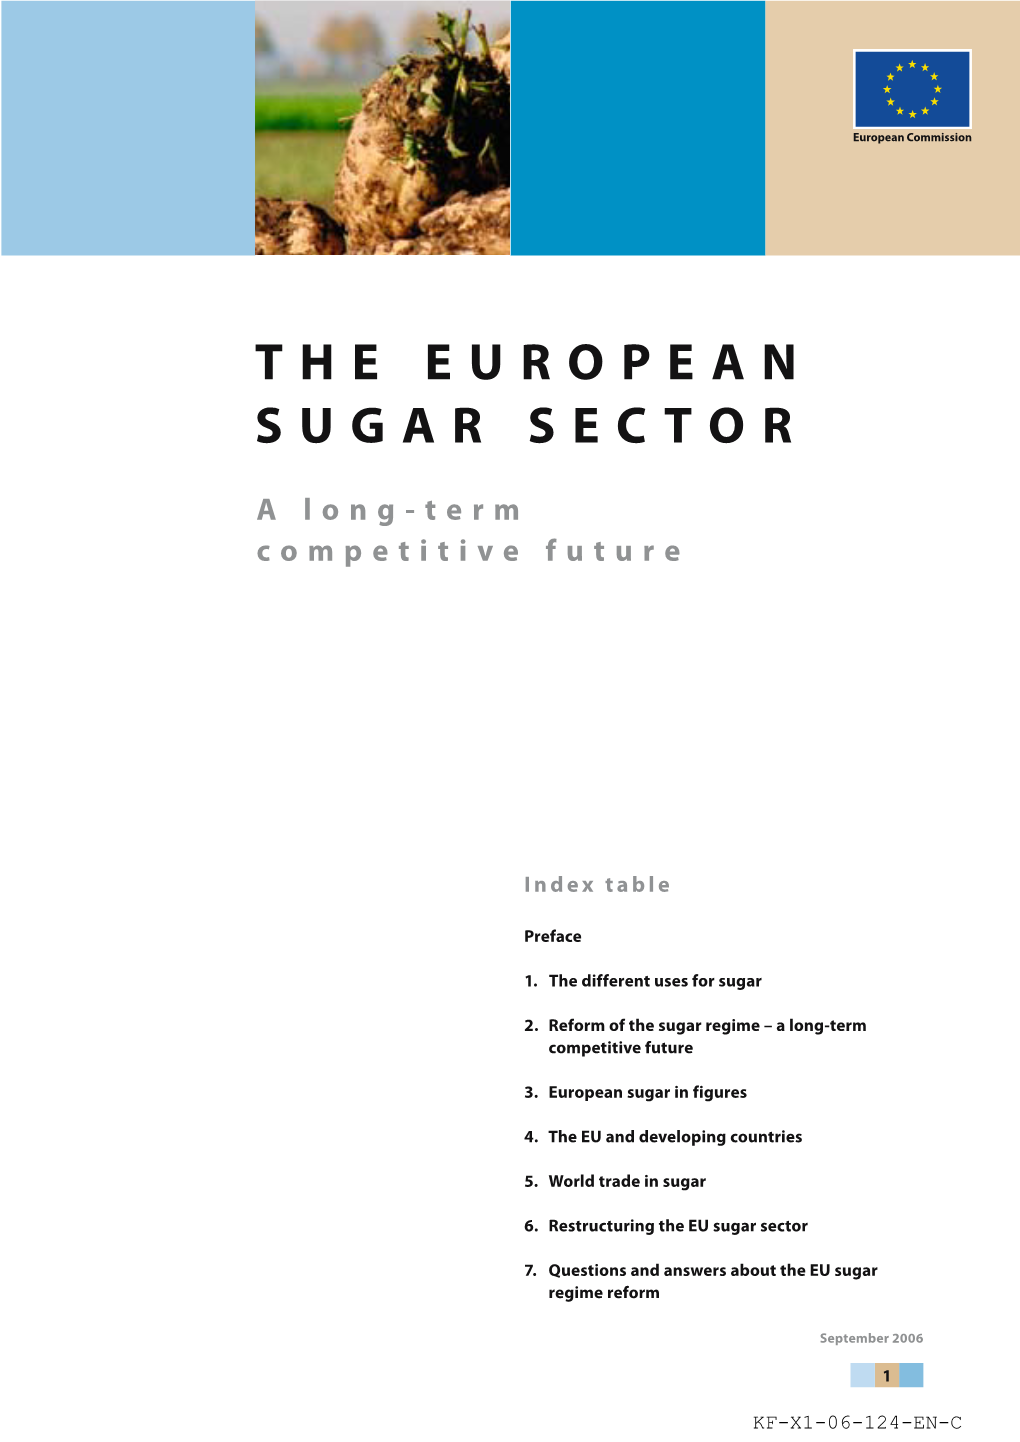 The European Sugar Sector